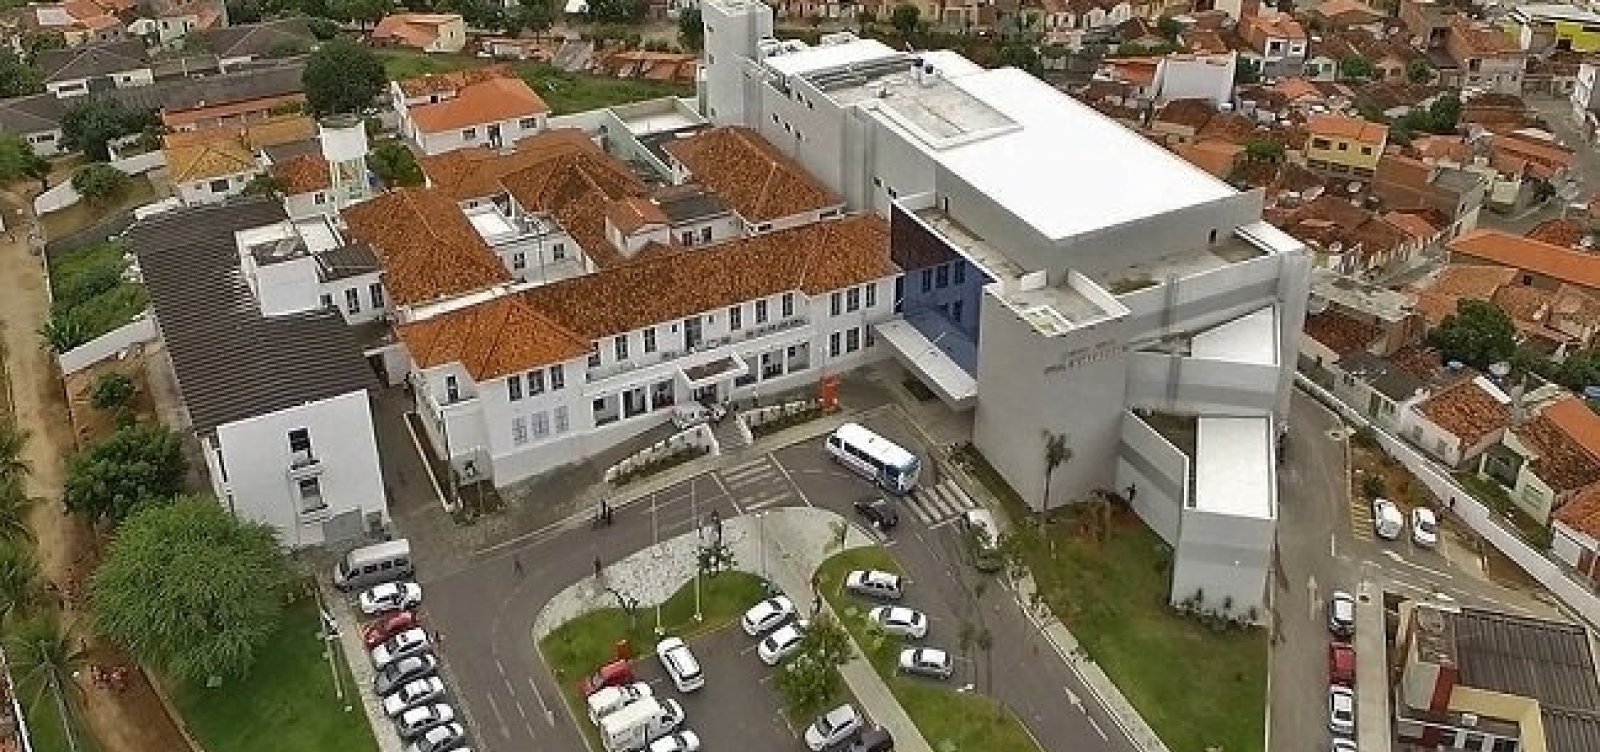 Mulher que saiu da Itália é internada em Jequié com suspeita de coronavírus, diz hospital